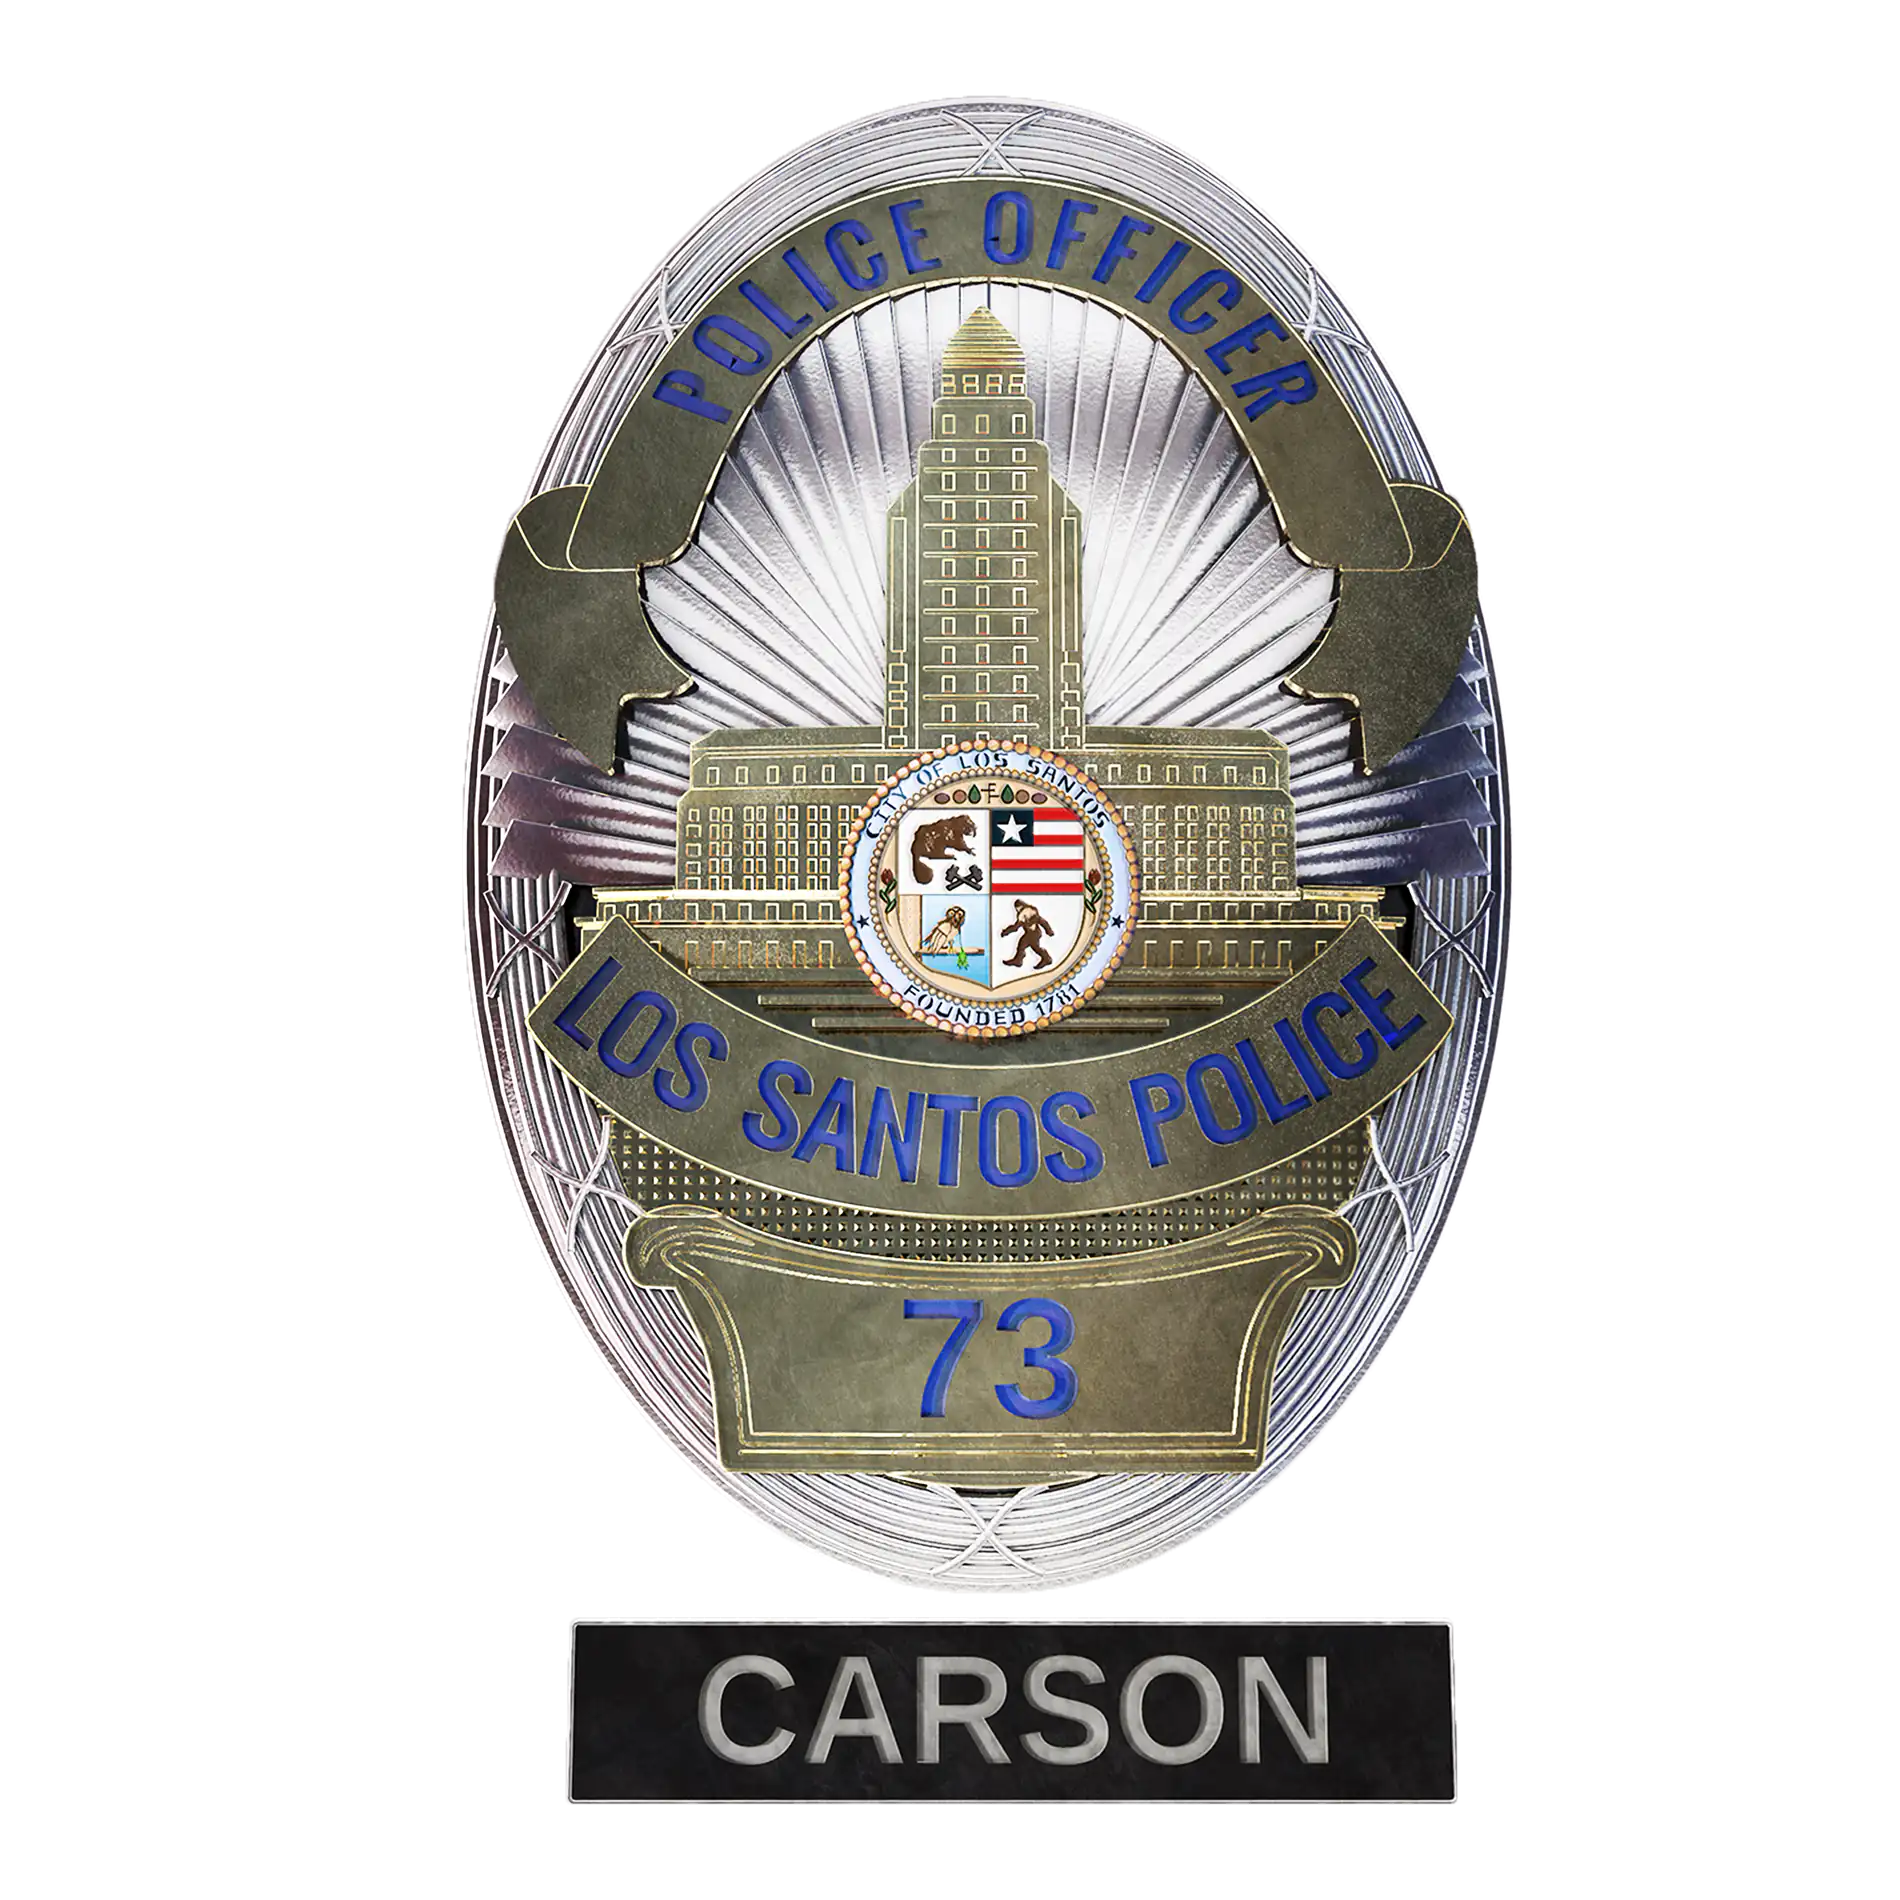 3D-Rendering einer fiktiven Polizeimarke der Los Santos Police mit der Dienstnummer 73 und dem Namen "Carson"